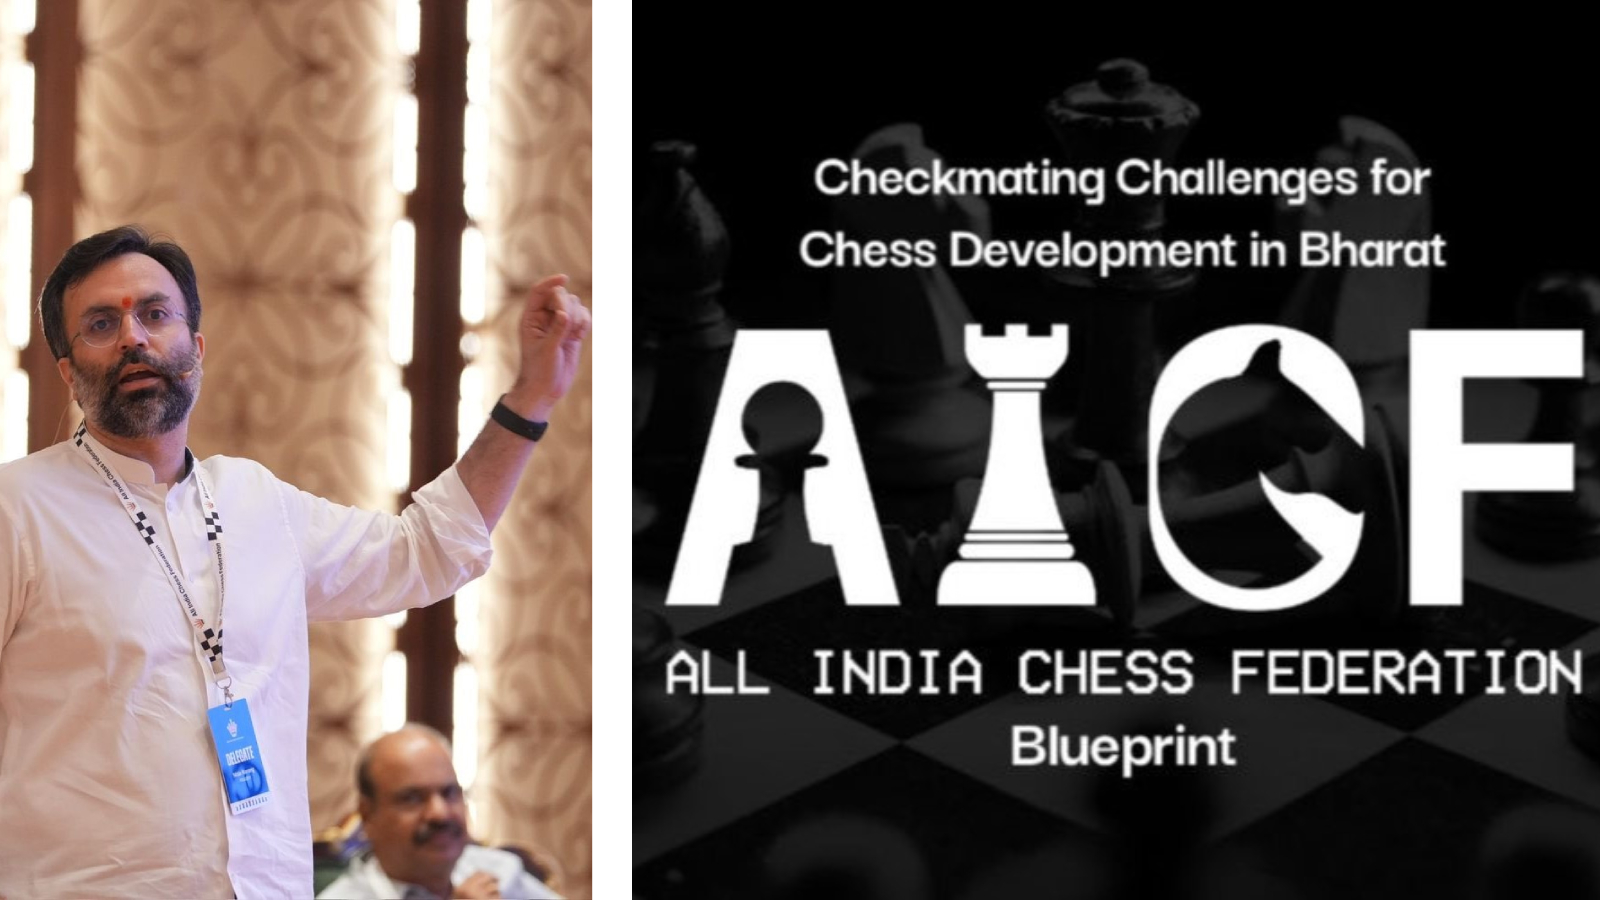 印度国际象棋的 6.5 亿卢比蓝图：印度国际象棋联合会宣布计划在每个家庭普及这项运动 | 国际象棋新闻